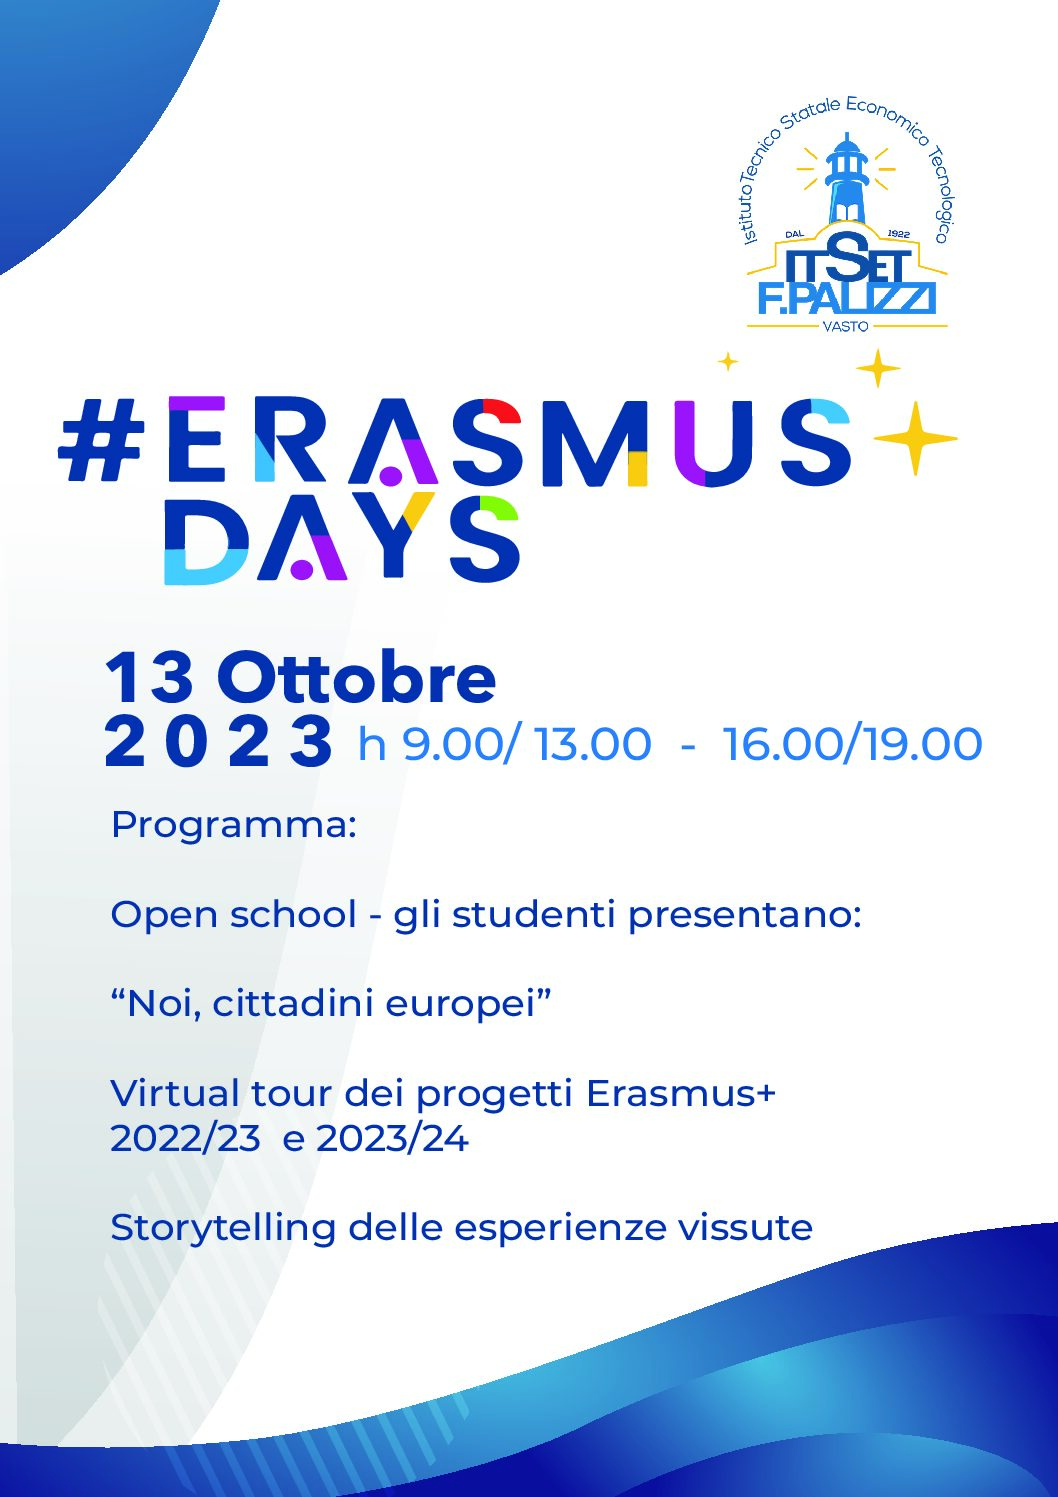 Il 13 ottobre l'Erasmus Days al Palizzi di Vasto